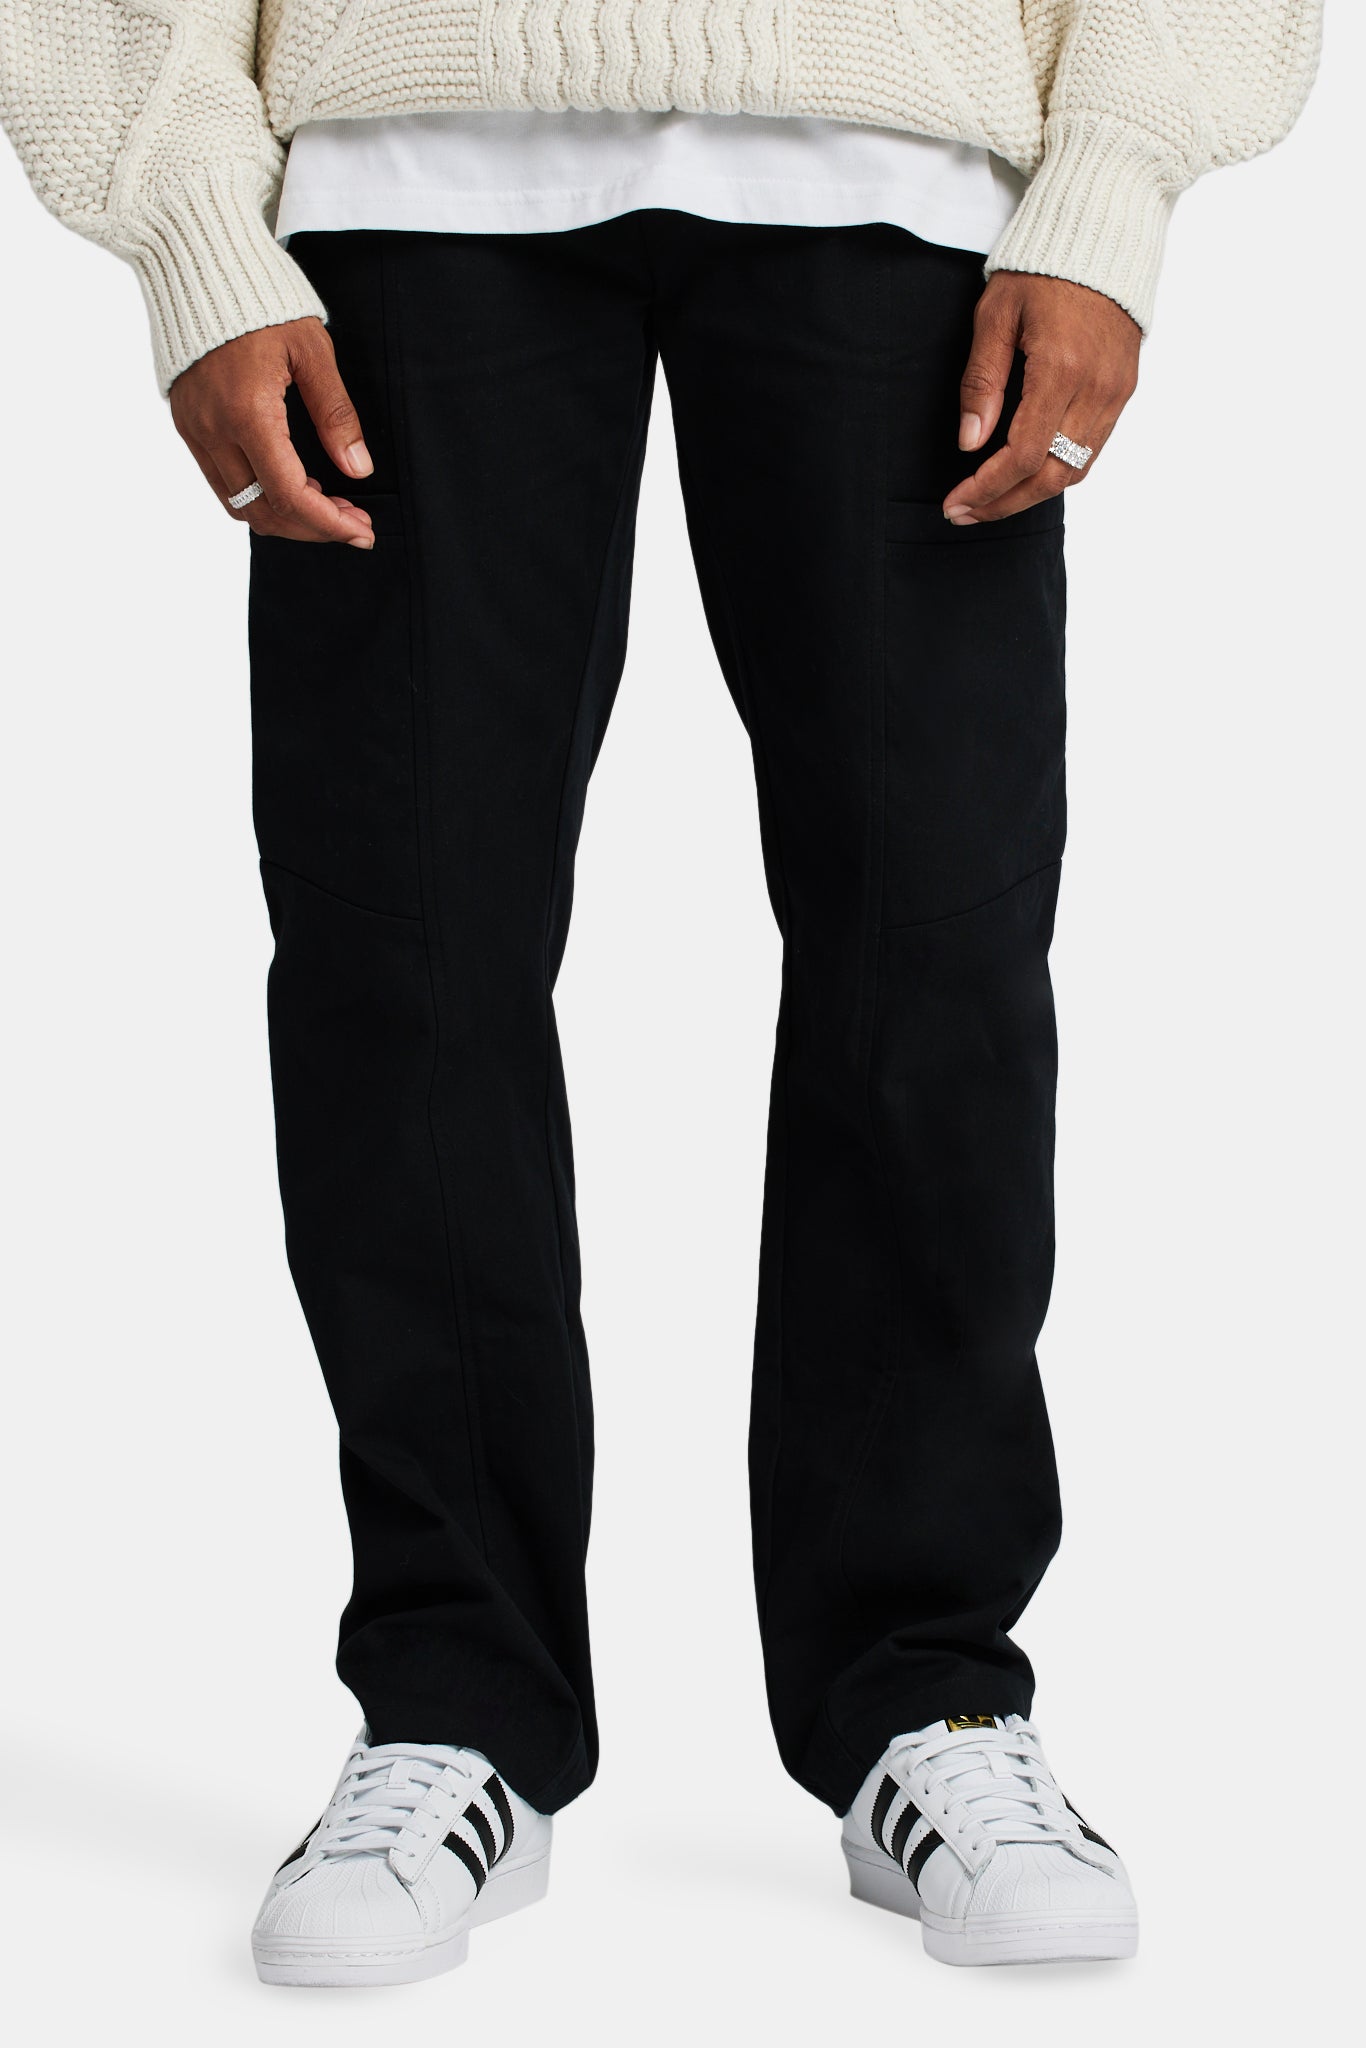 Cernucci Colectivo Varsity Cargo Trousers - Black | Mens Bottoms | Shop ...